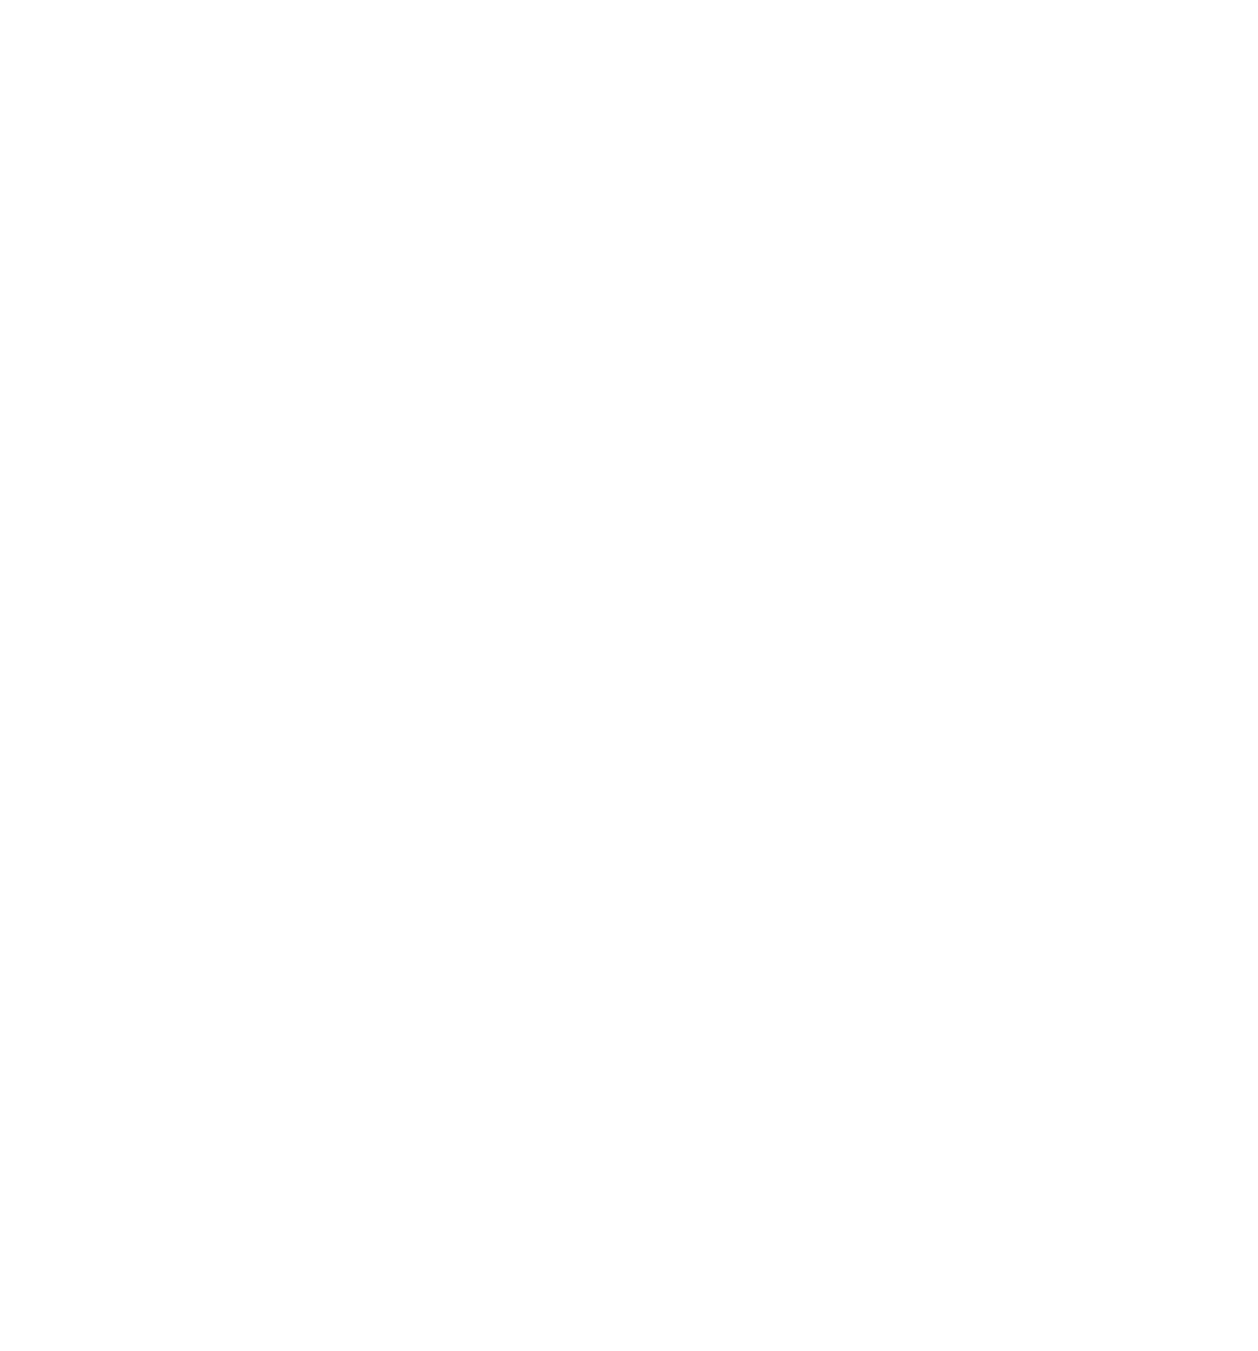 Five Bridges Bar & Grill